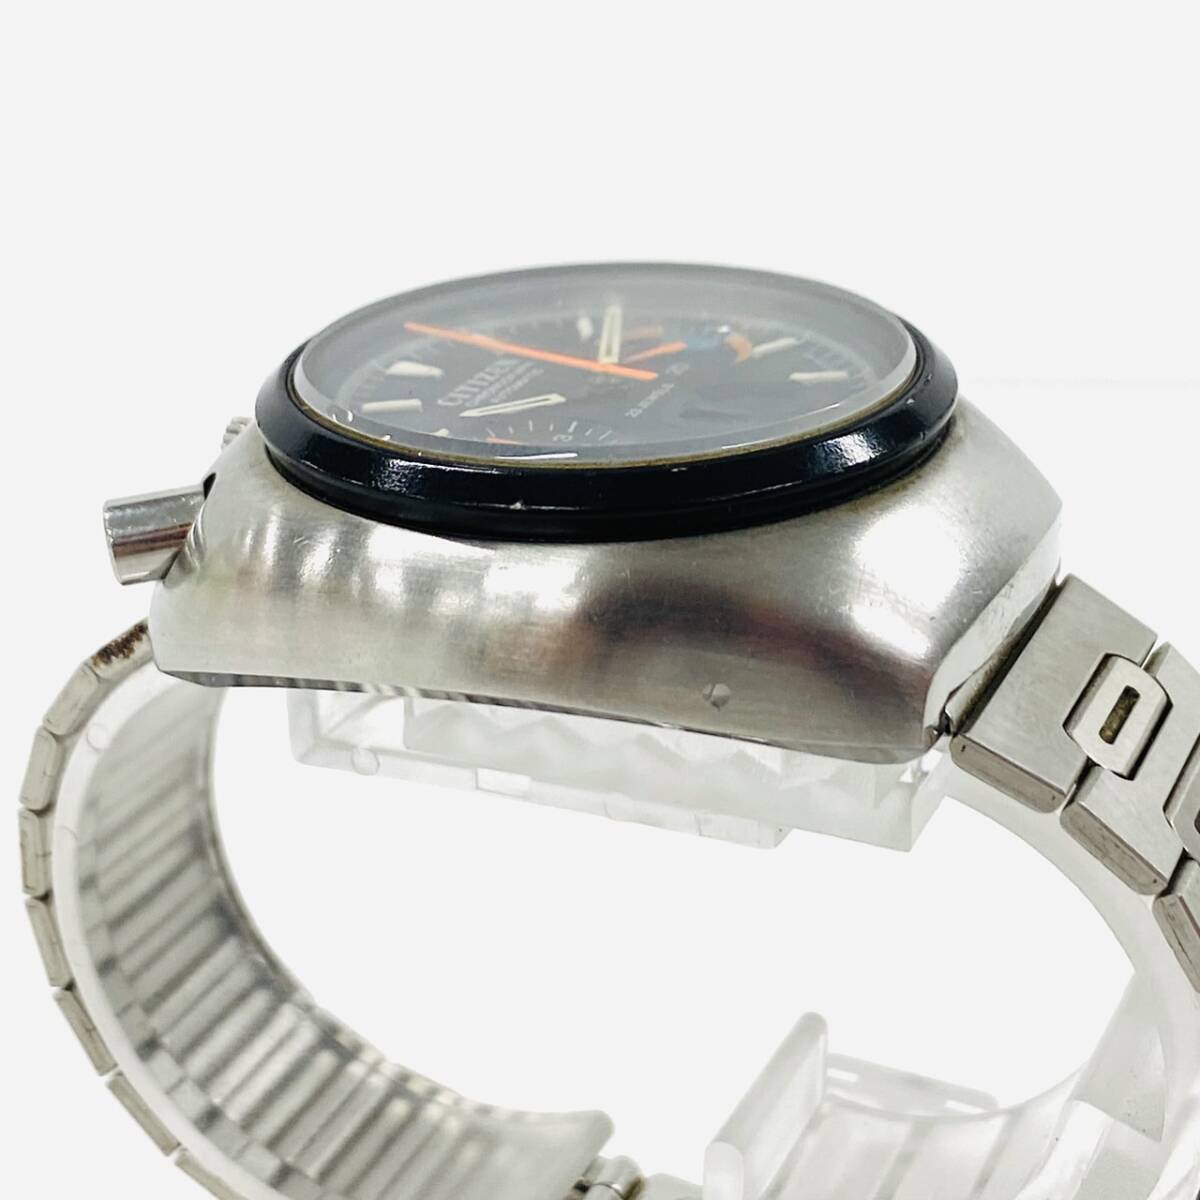 D654-Z1-1237 * CITIZEN Citizen Challenge timer tsuno chronograph self-winding watch operation 3 hands men's wristwatch 4-901053 clock watch ④